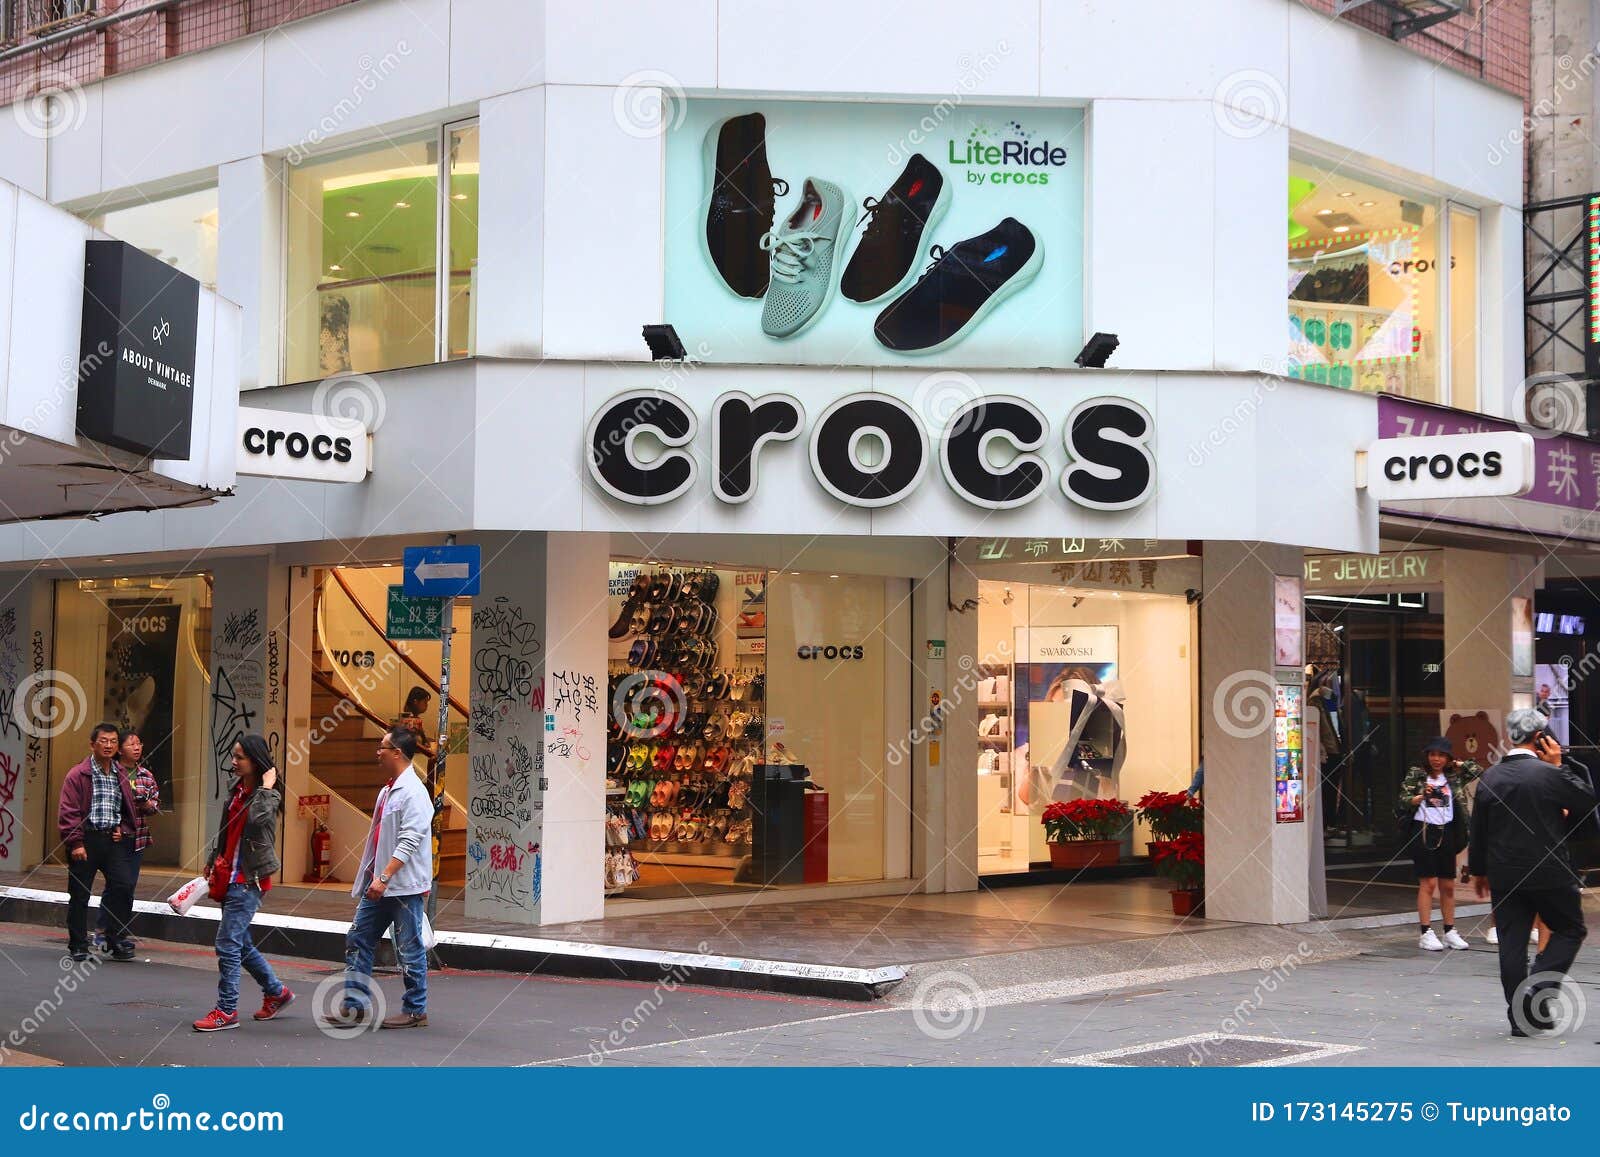 crocs shoes shop near me